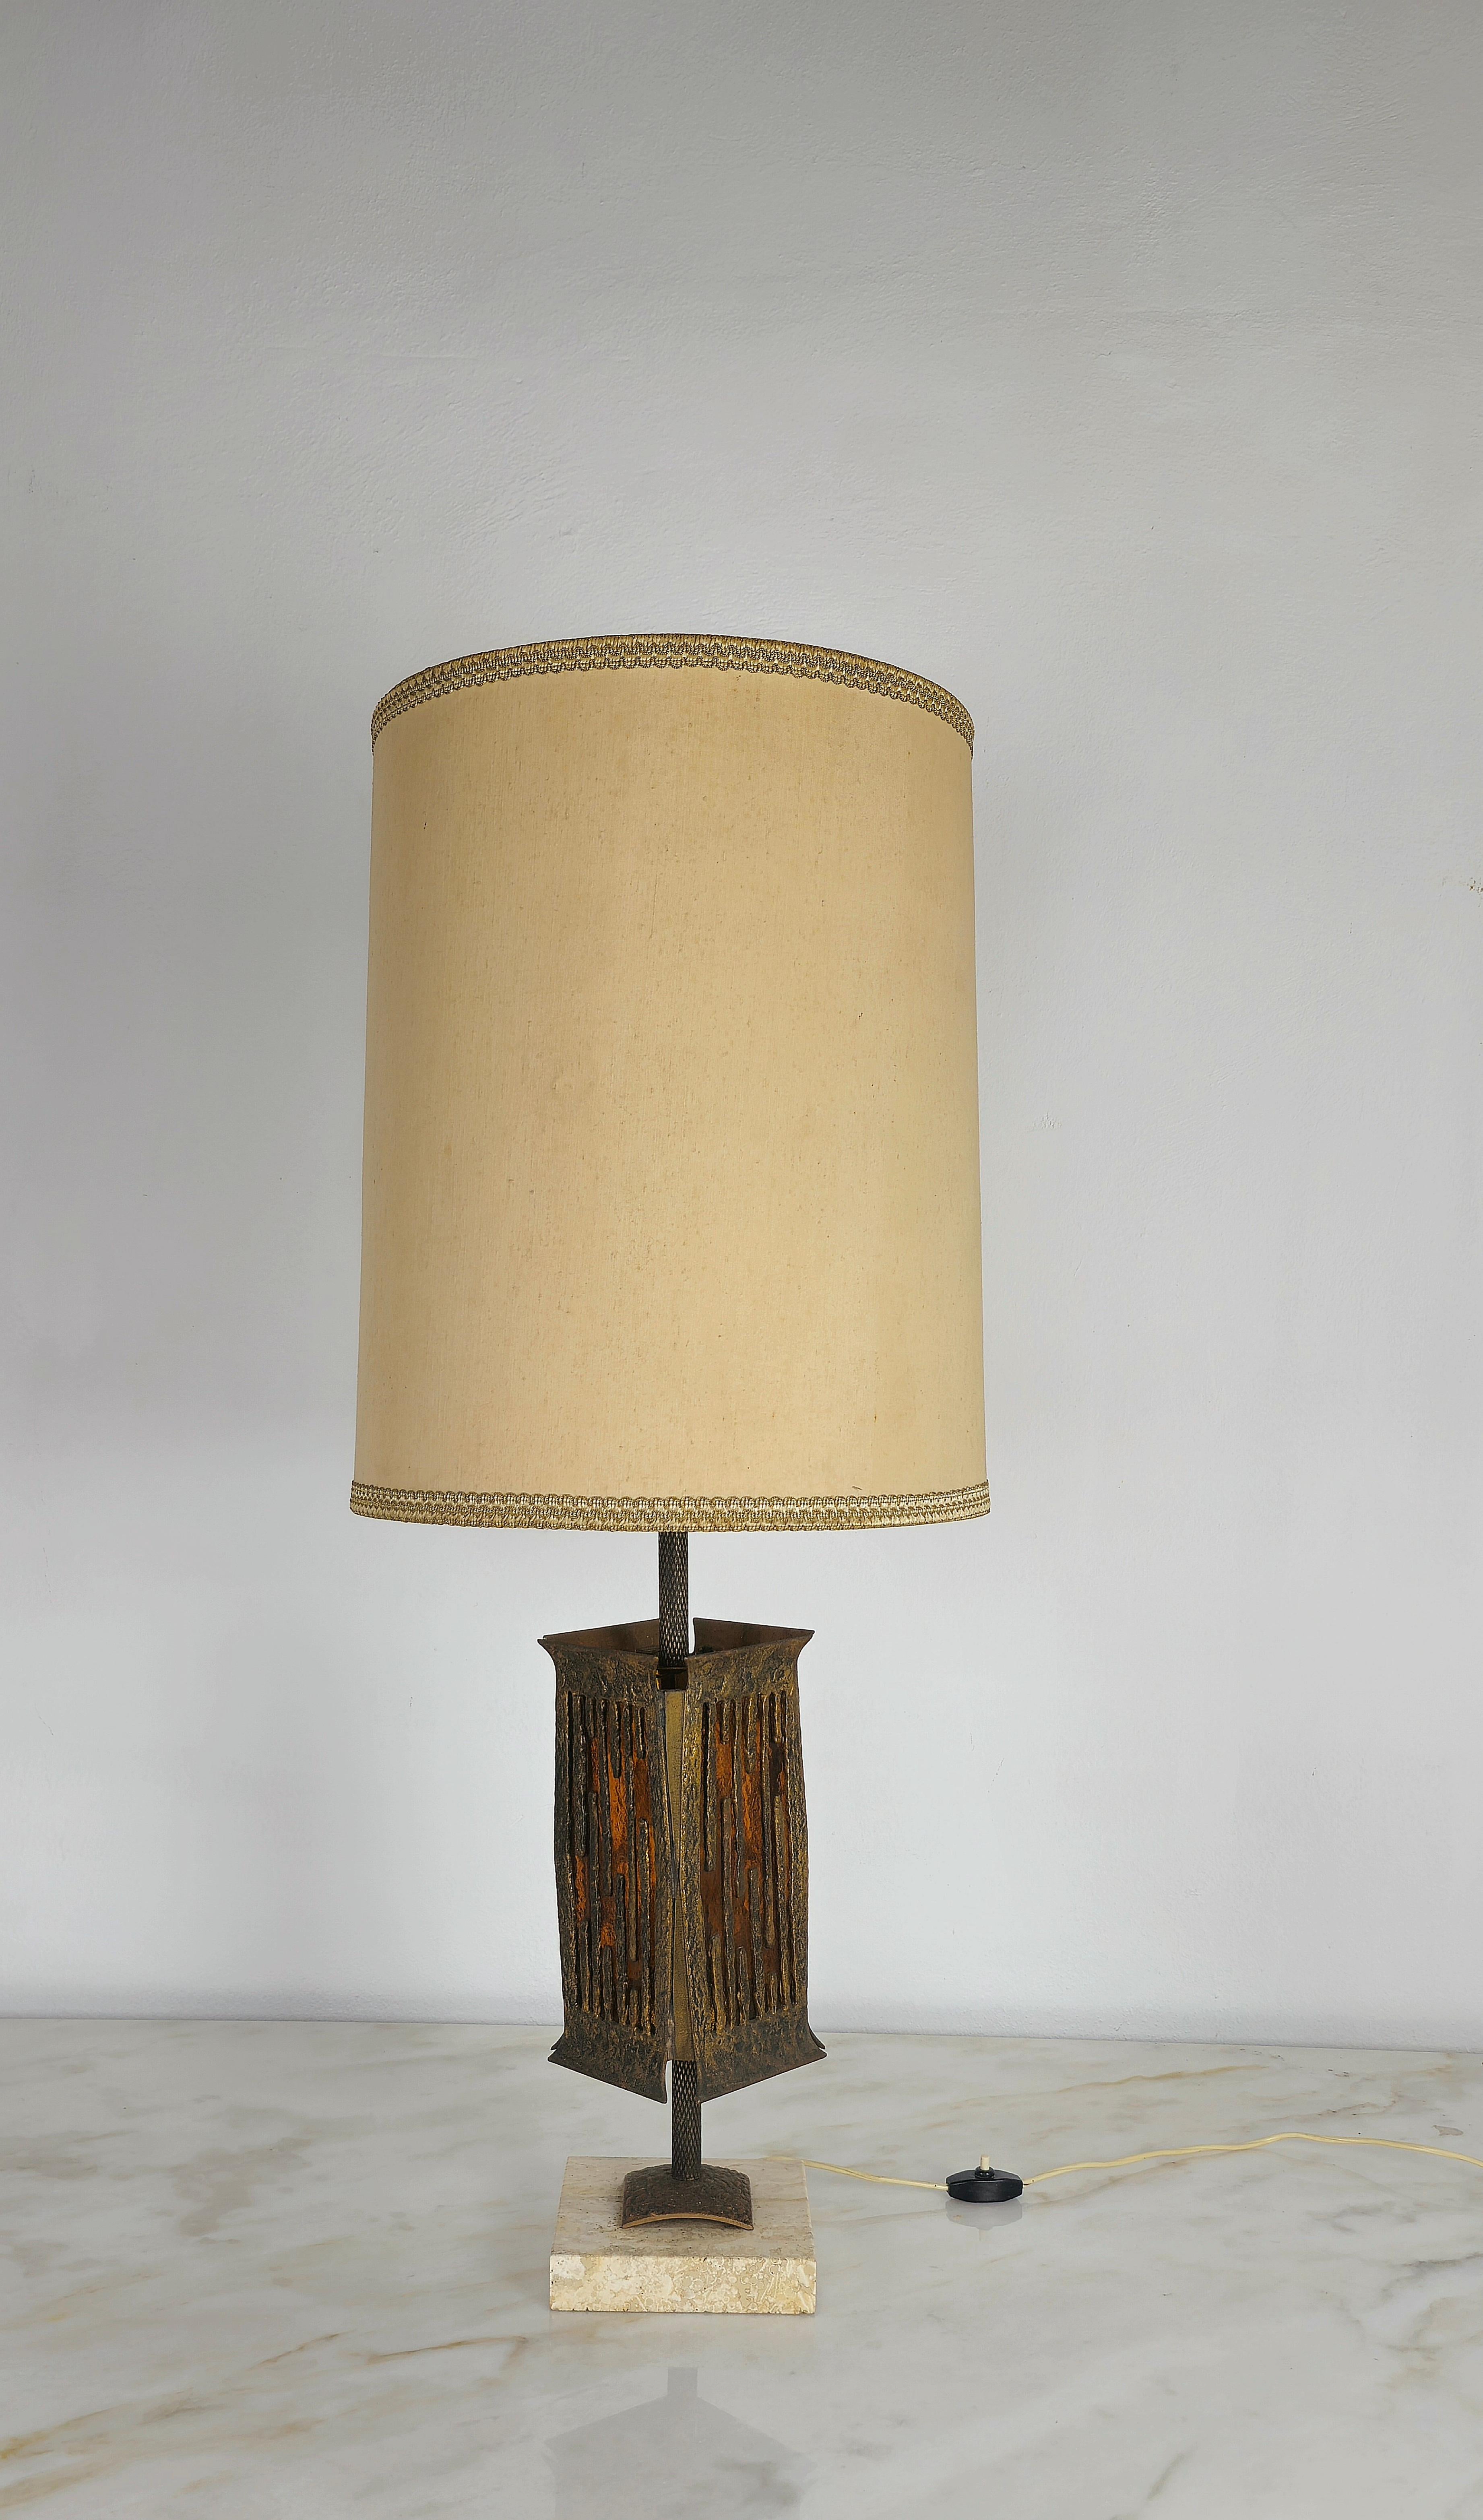 Lampe de table brutaliste d'Albano Poli pour Poliarte fabriquée en Italie dans les années 70.
La lampe a une structure en bronze avec 2 lumières intermittentes, la première qui éclaire l'abat-jour cylindrique en tissu, et la seconde qui éclaire un